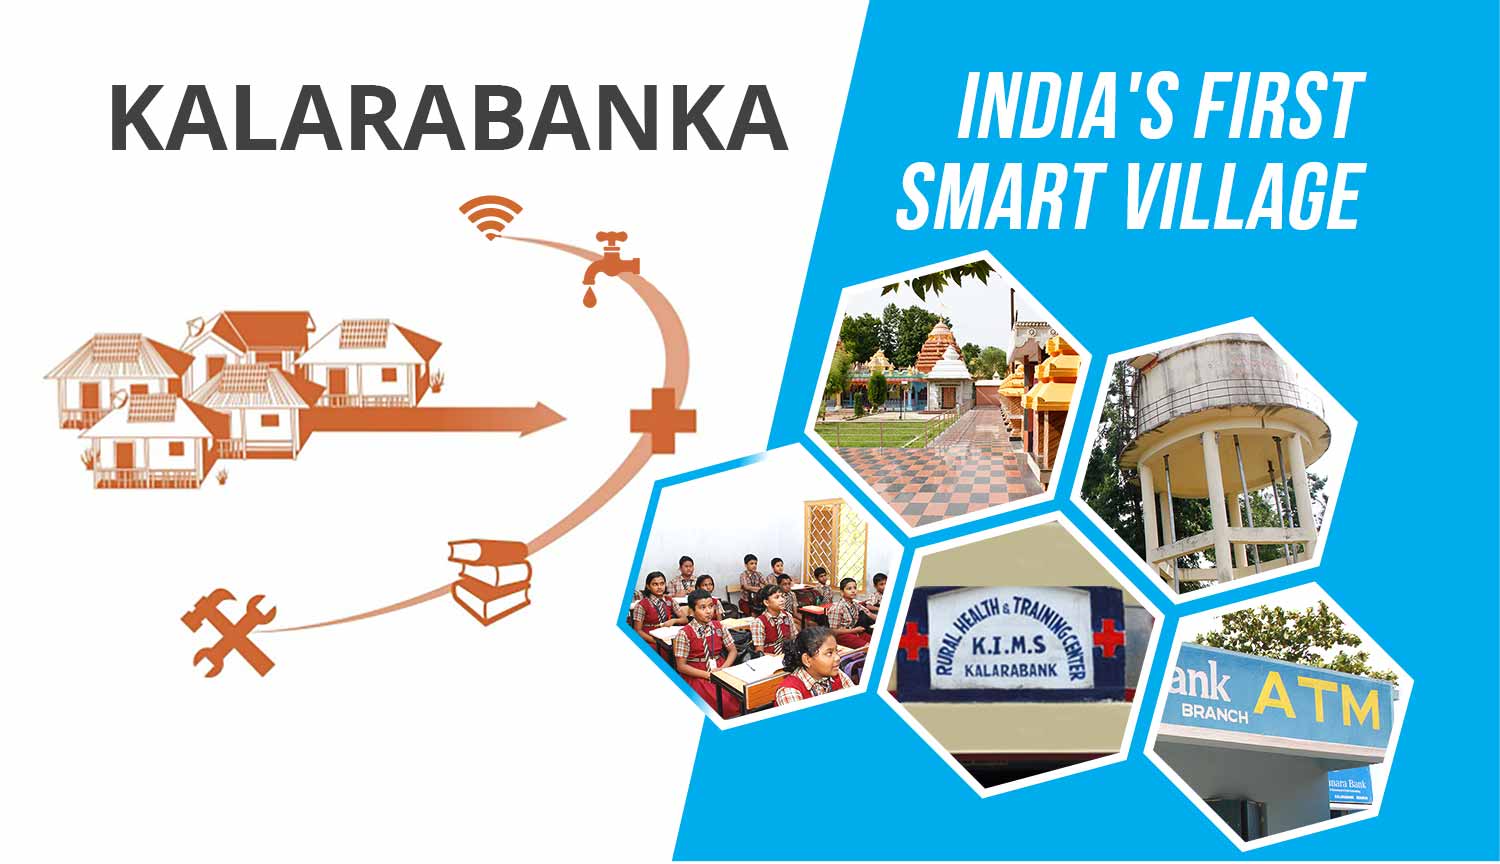 Kalarabanka India's first smart village